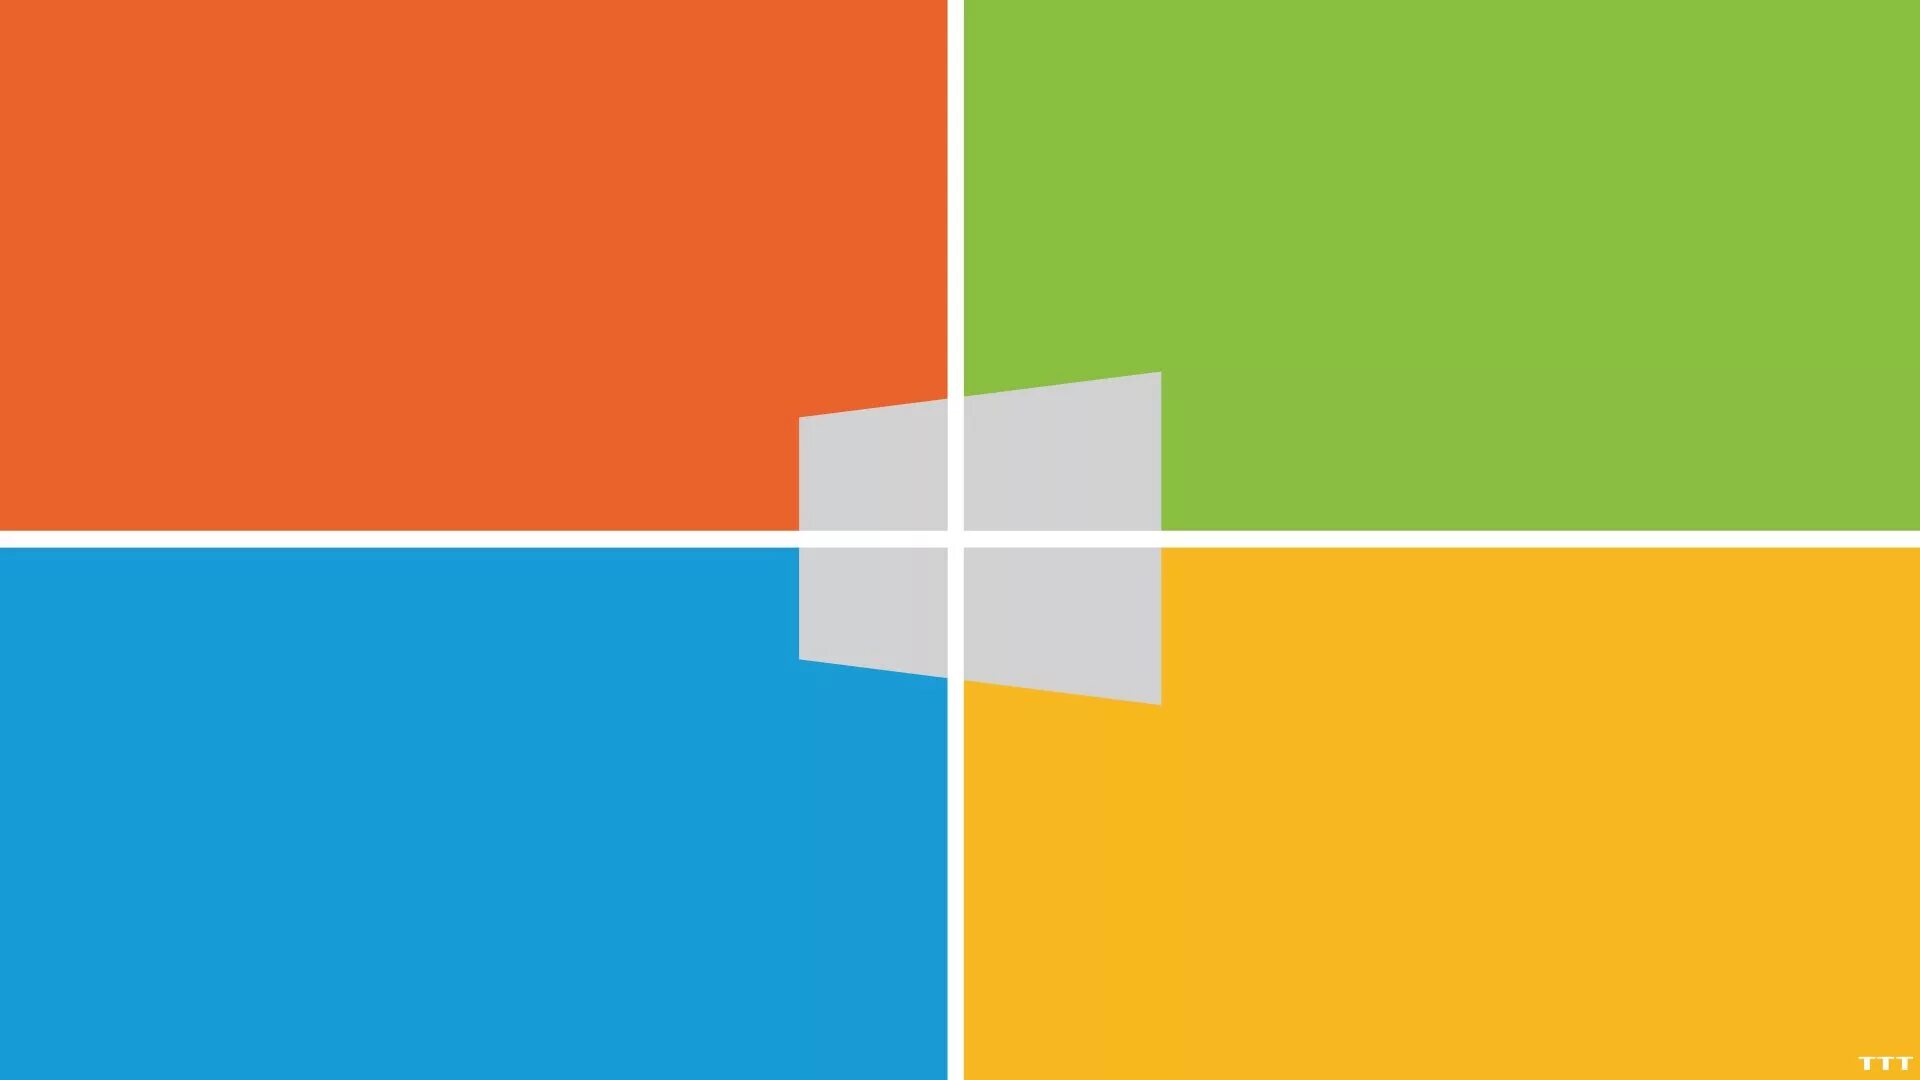 Обои Windows. Рабочий стол Windows 10. Фон Windows 8. Заставка на рабочий стол с разделением на зоны. 1.1 8 0